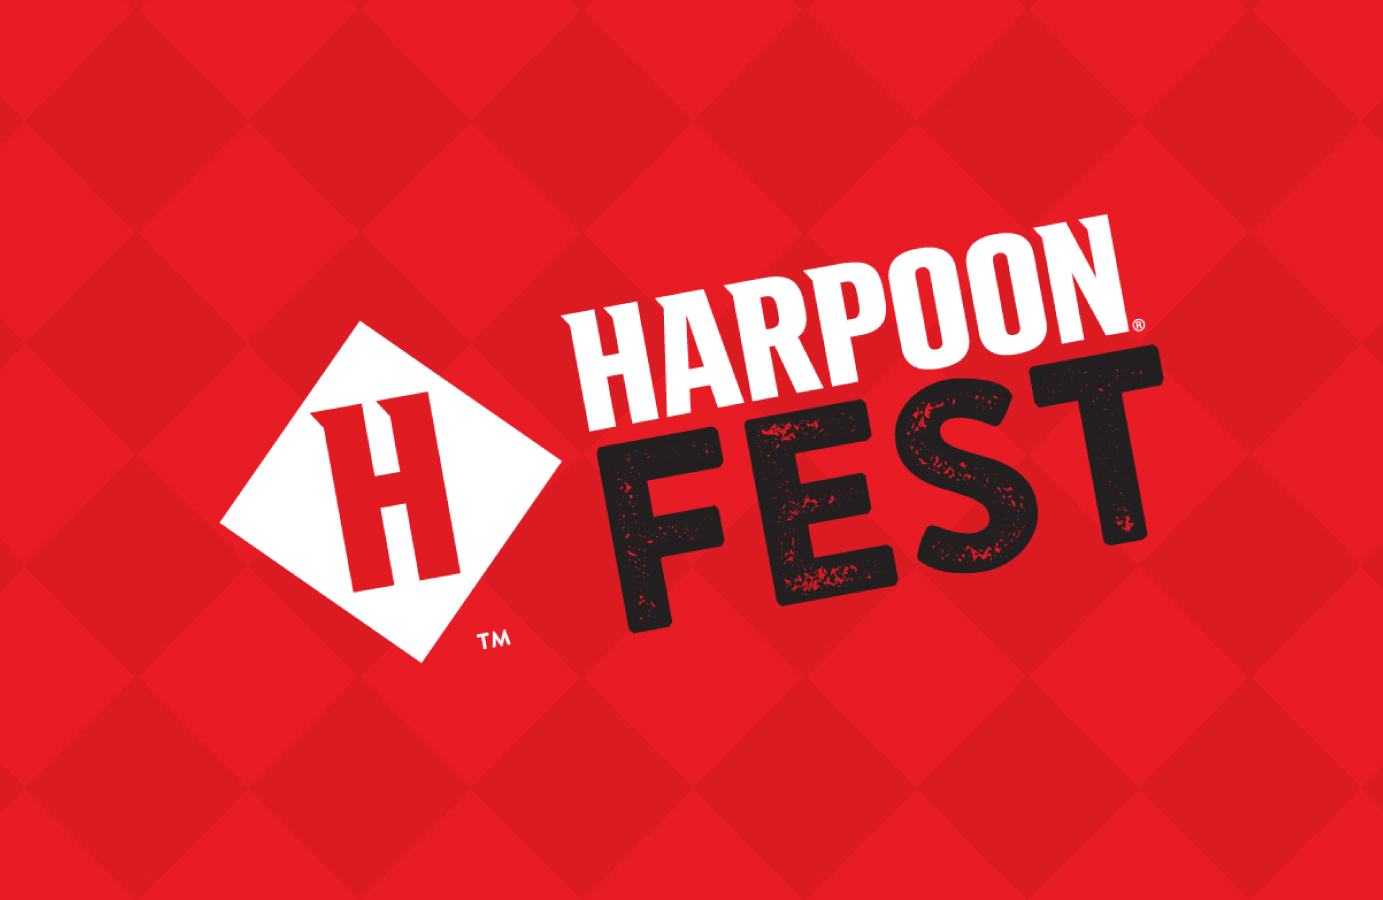 harpoon beer review